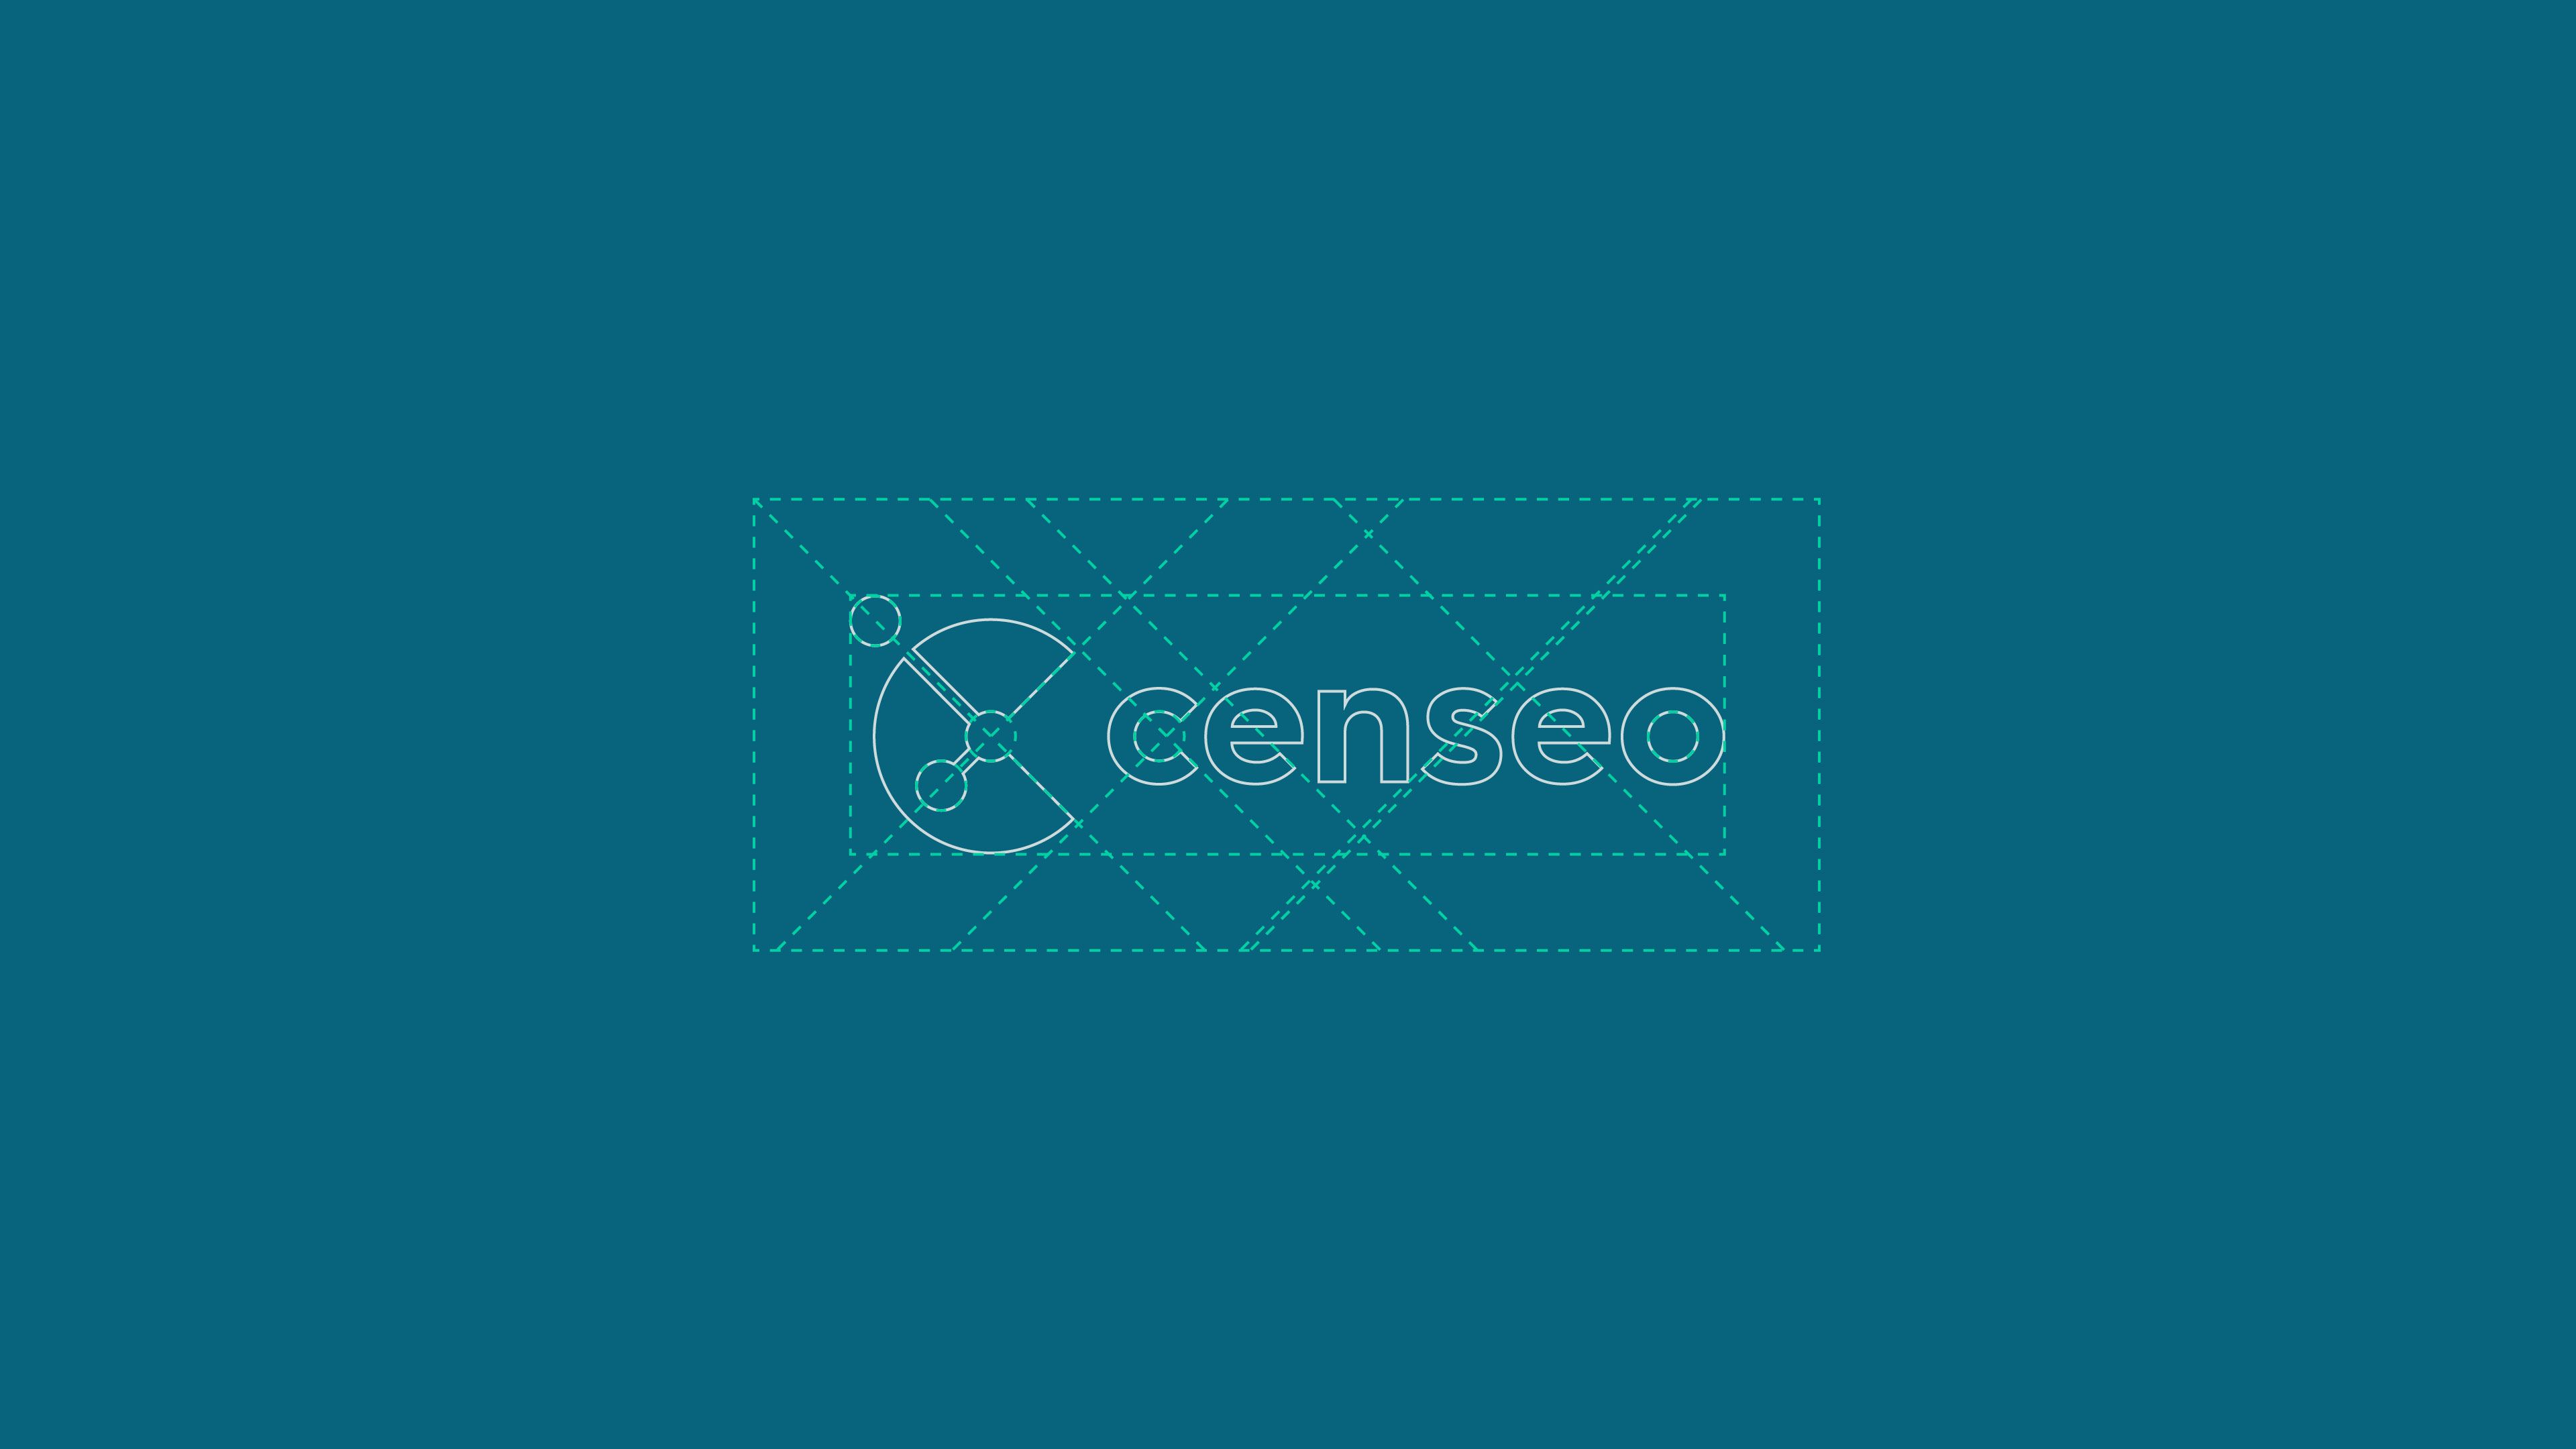 Censeo logo makeup